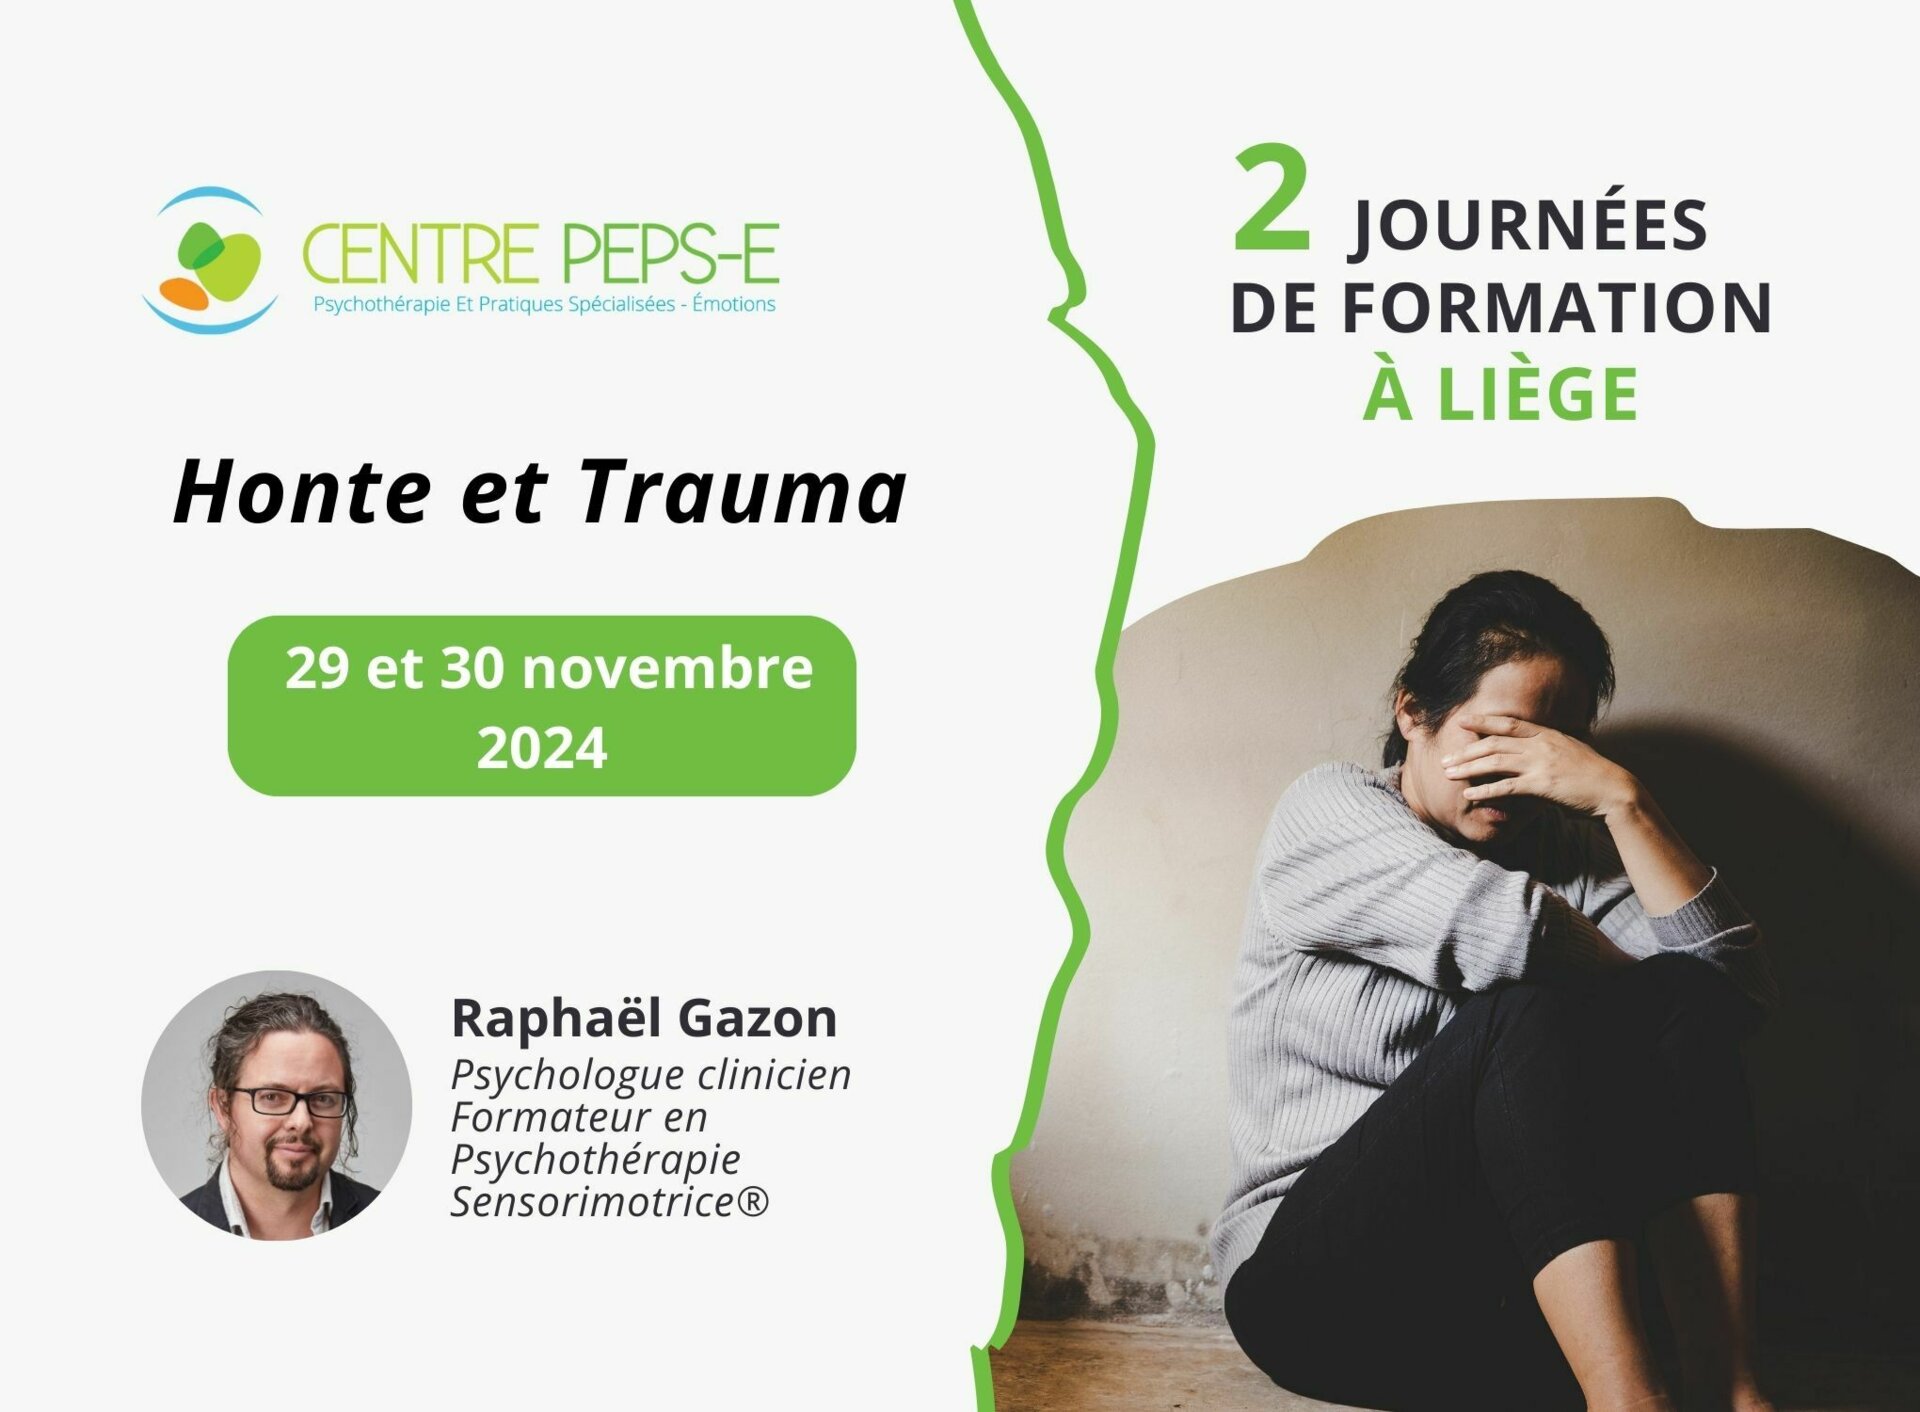 2 JOURNEES DE FORMATION : Honte et Trauma (Liège) - 29 et 30 novembre 2024